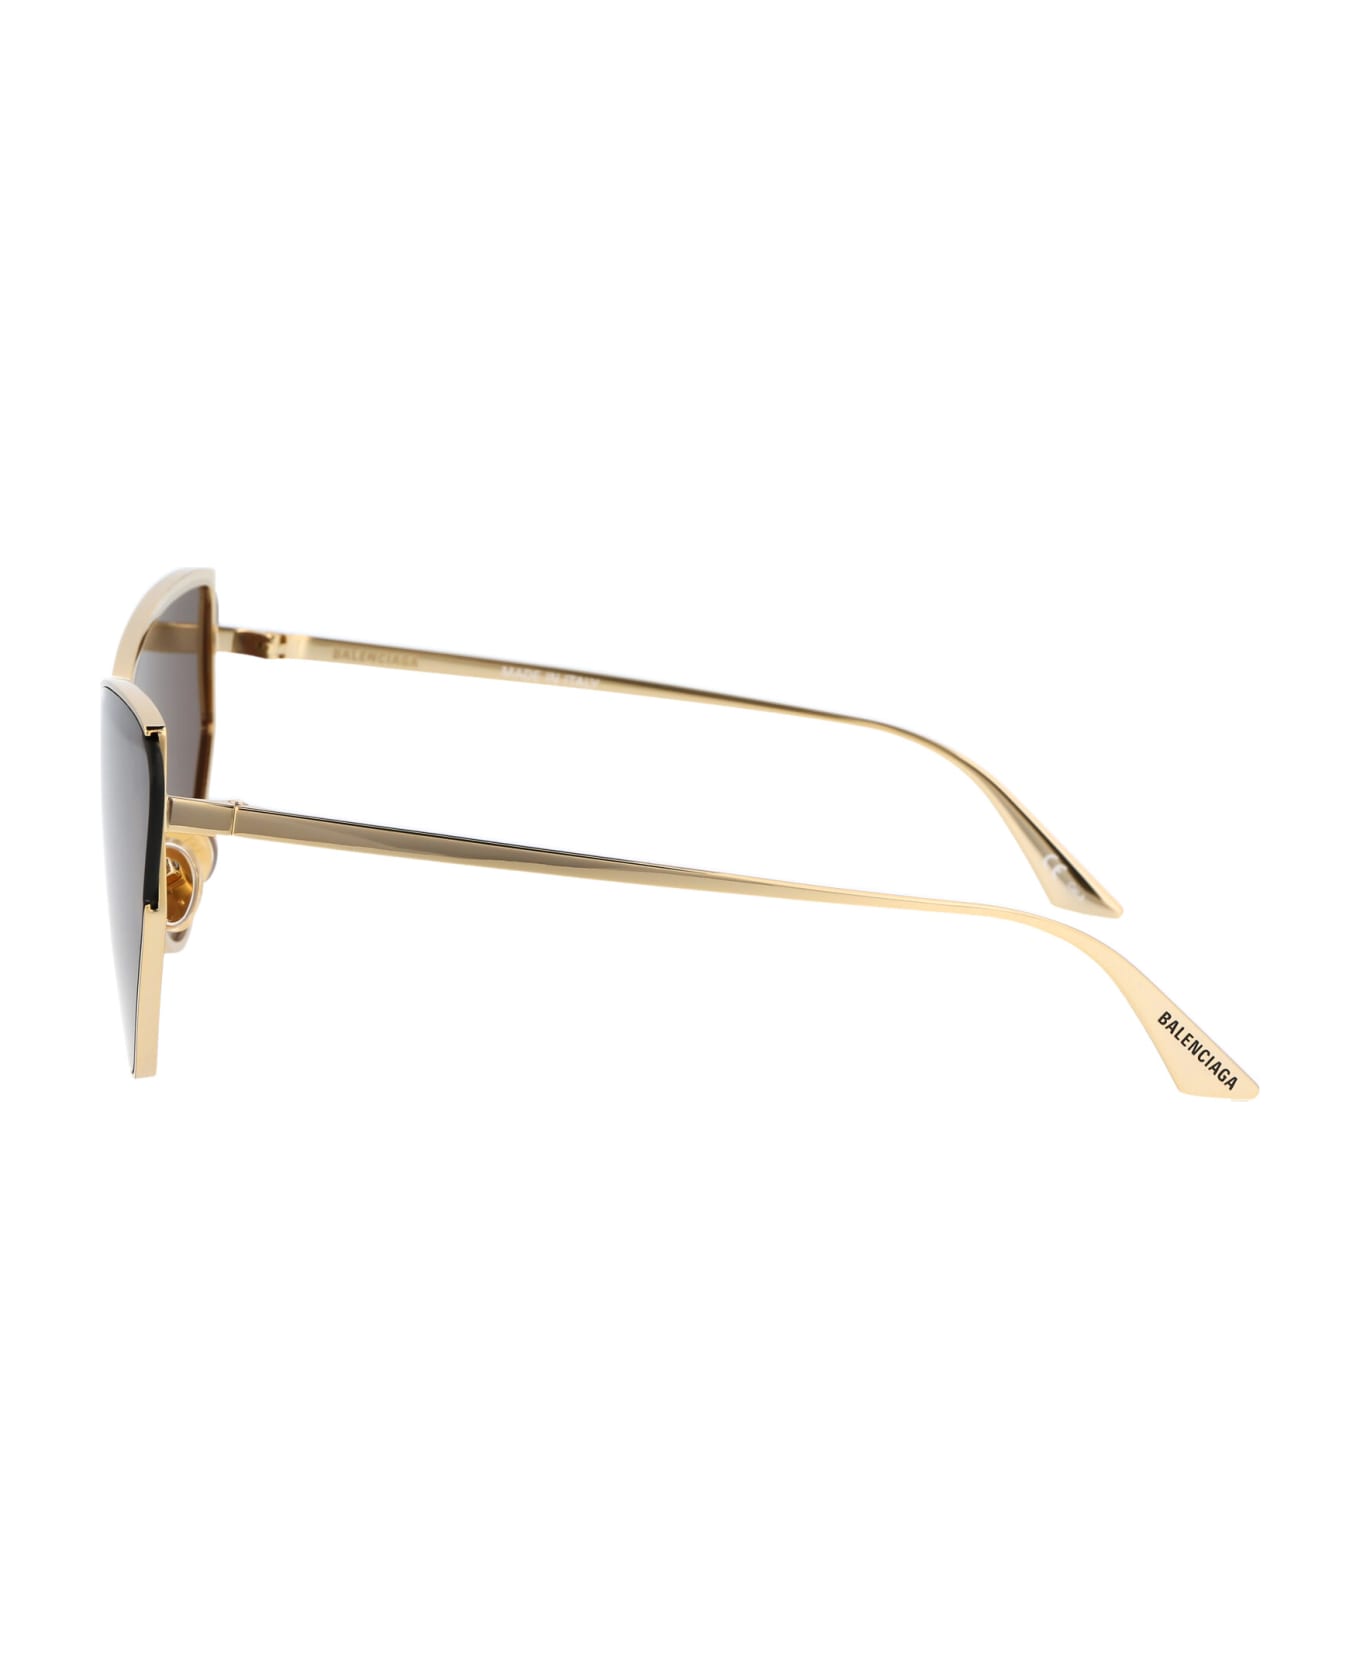 Balenciaga Eyewear Bb0191s Sunglasses - 002 GOLD GOLD BROWN